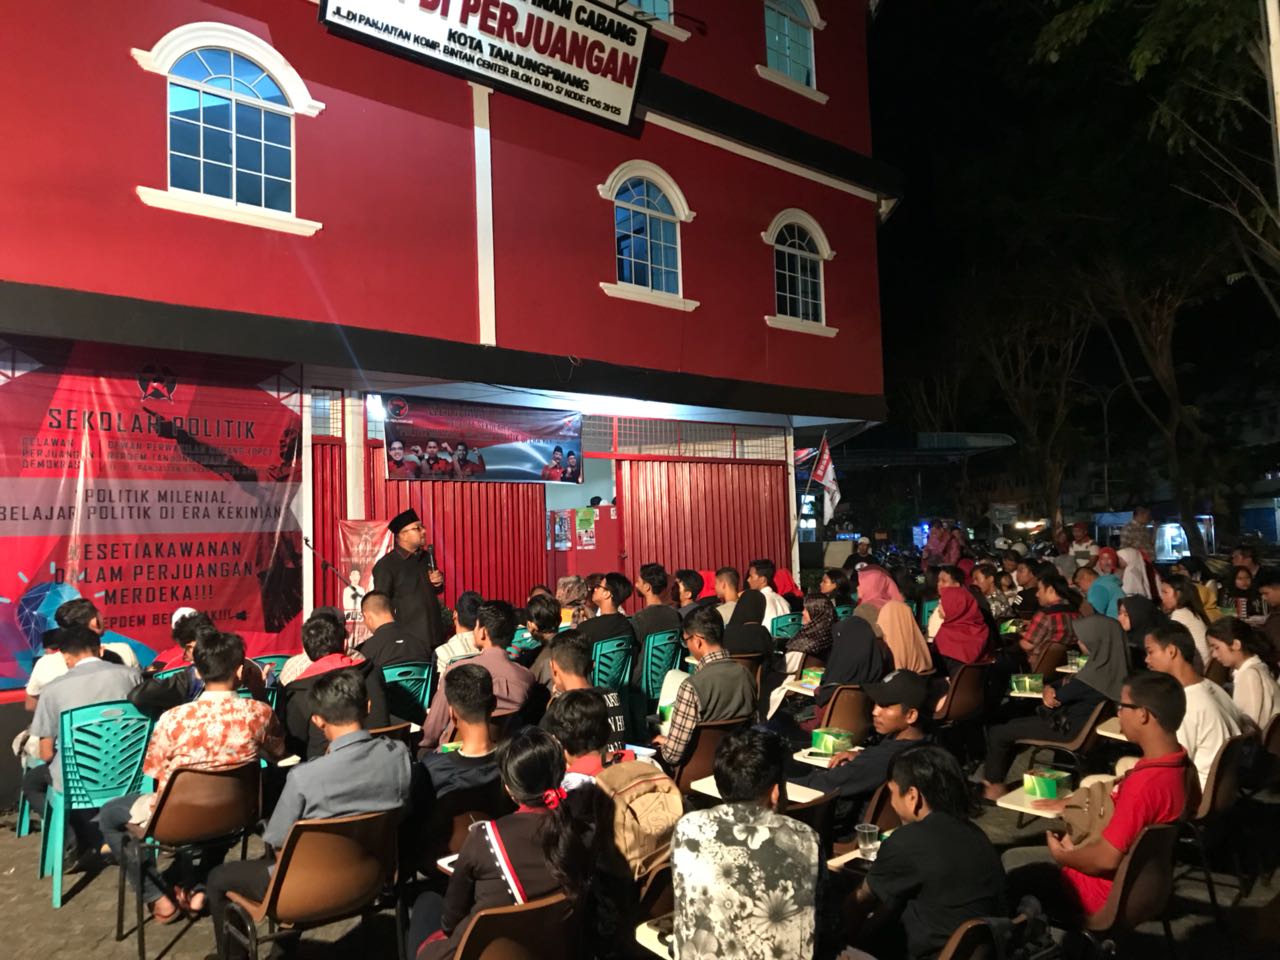 Masyarakat Tanjungpinang saat mengikuti sekolah politik Repdem Tanjungpinang.